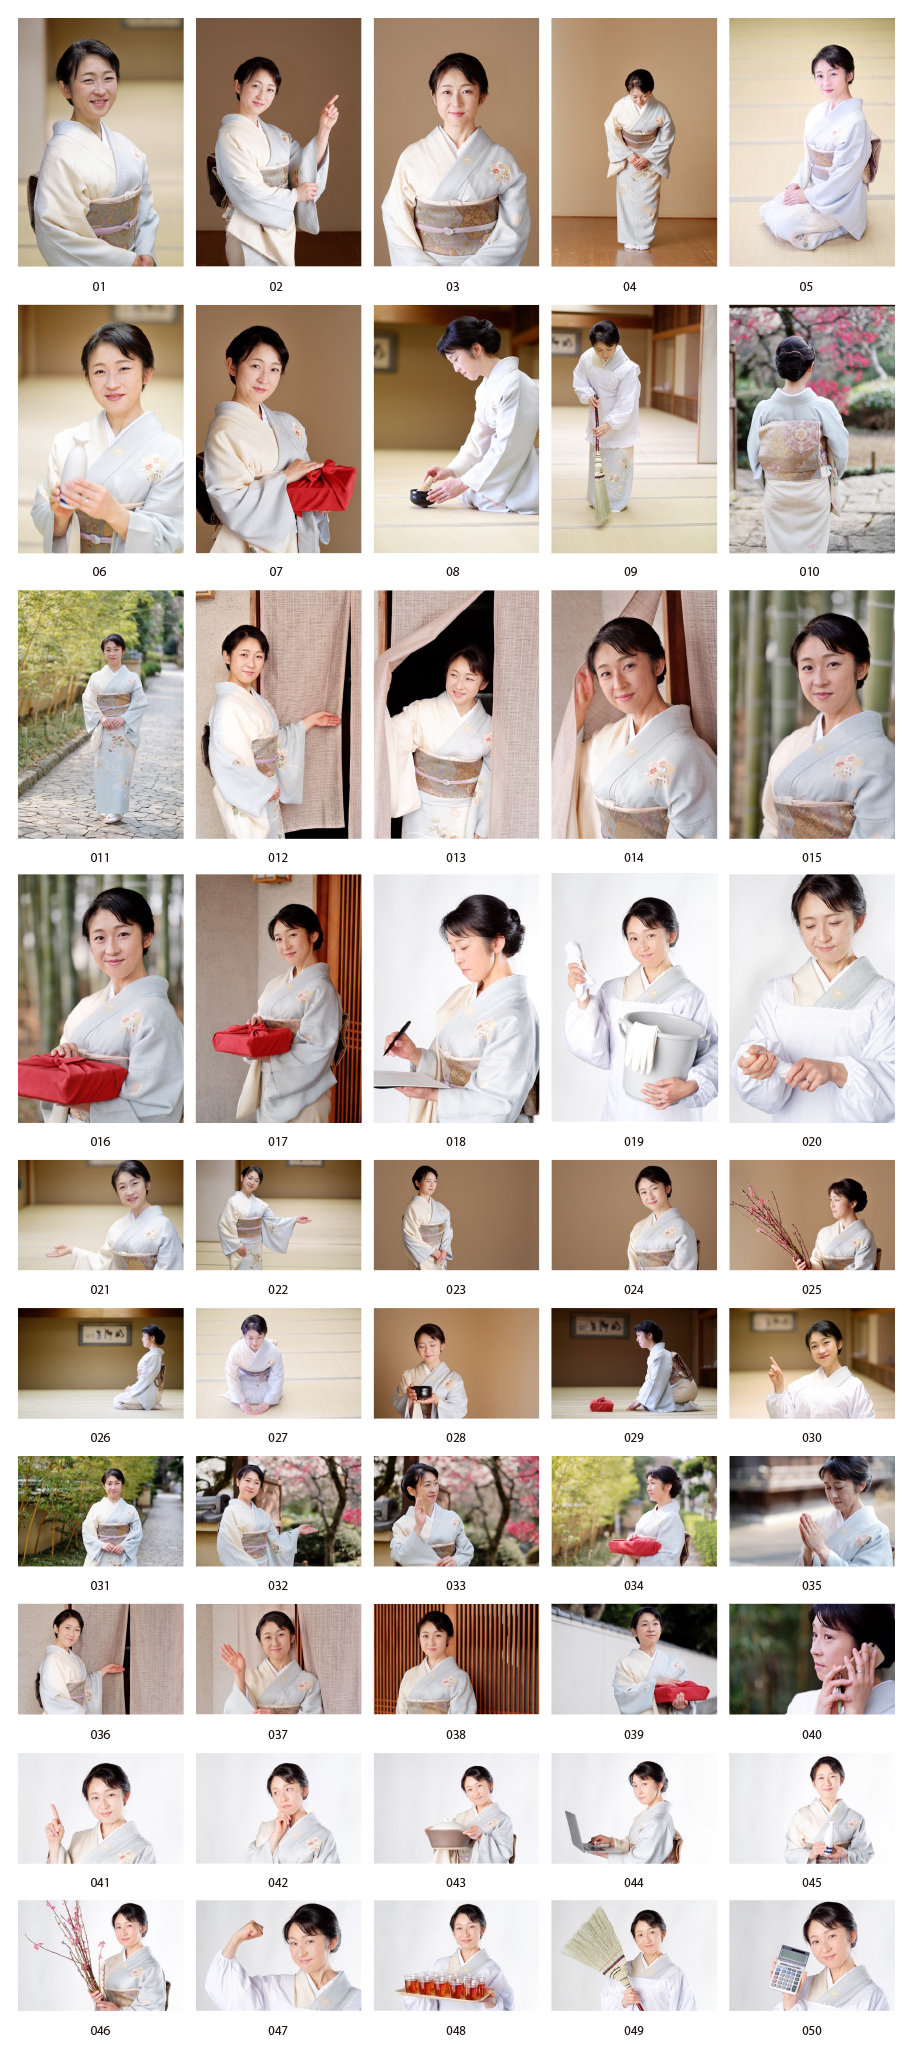 일본식 여성 사진 소재